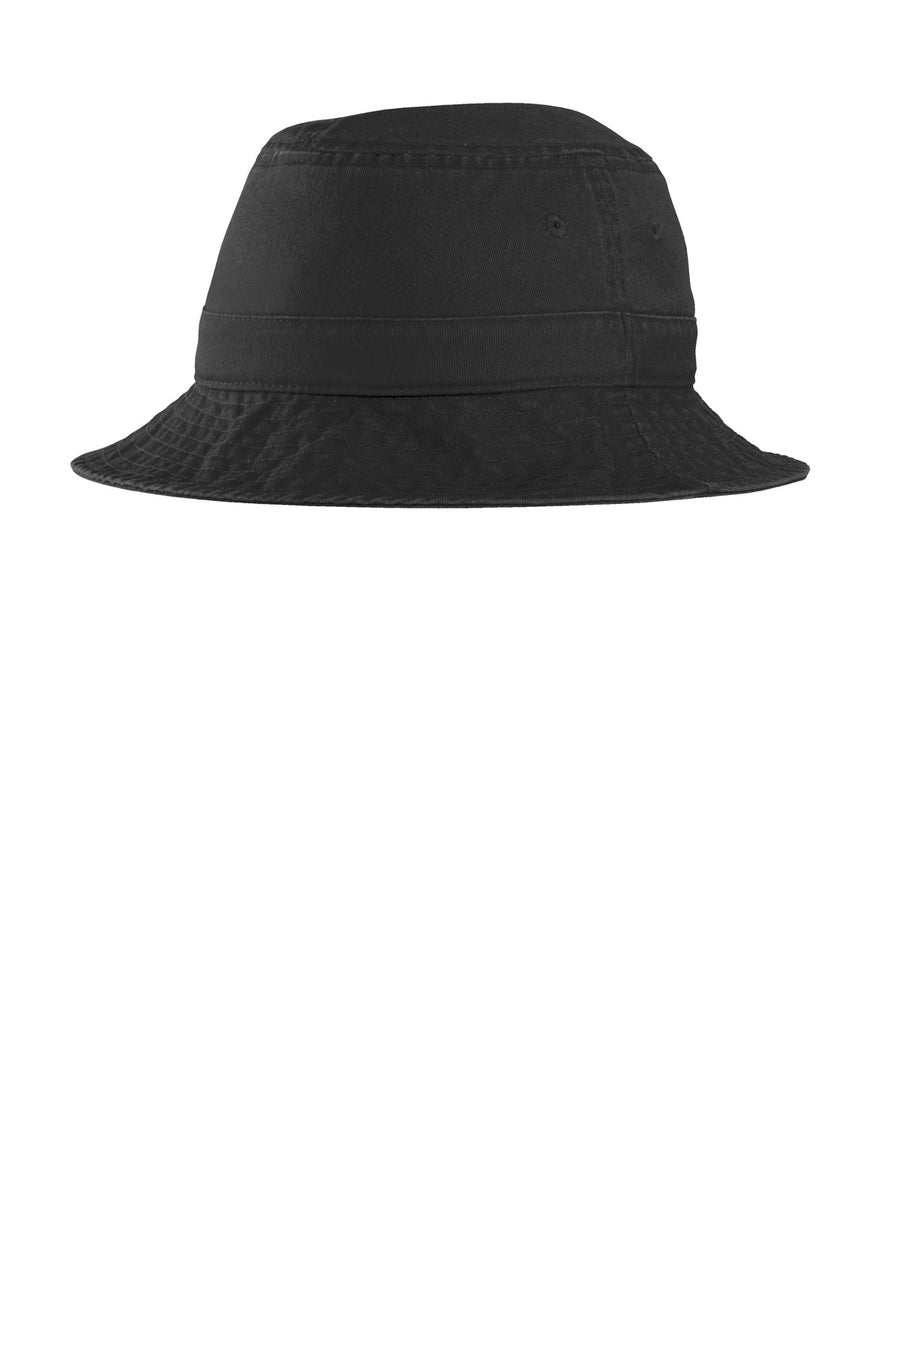 Port Authority Bucket Hat.